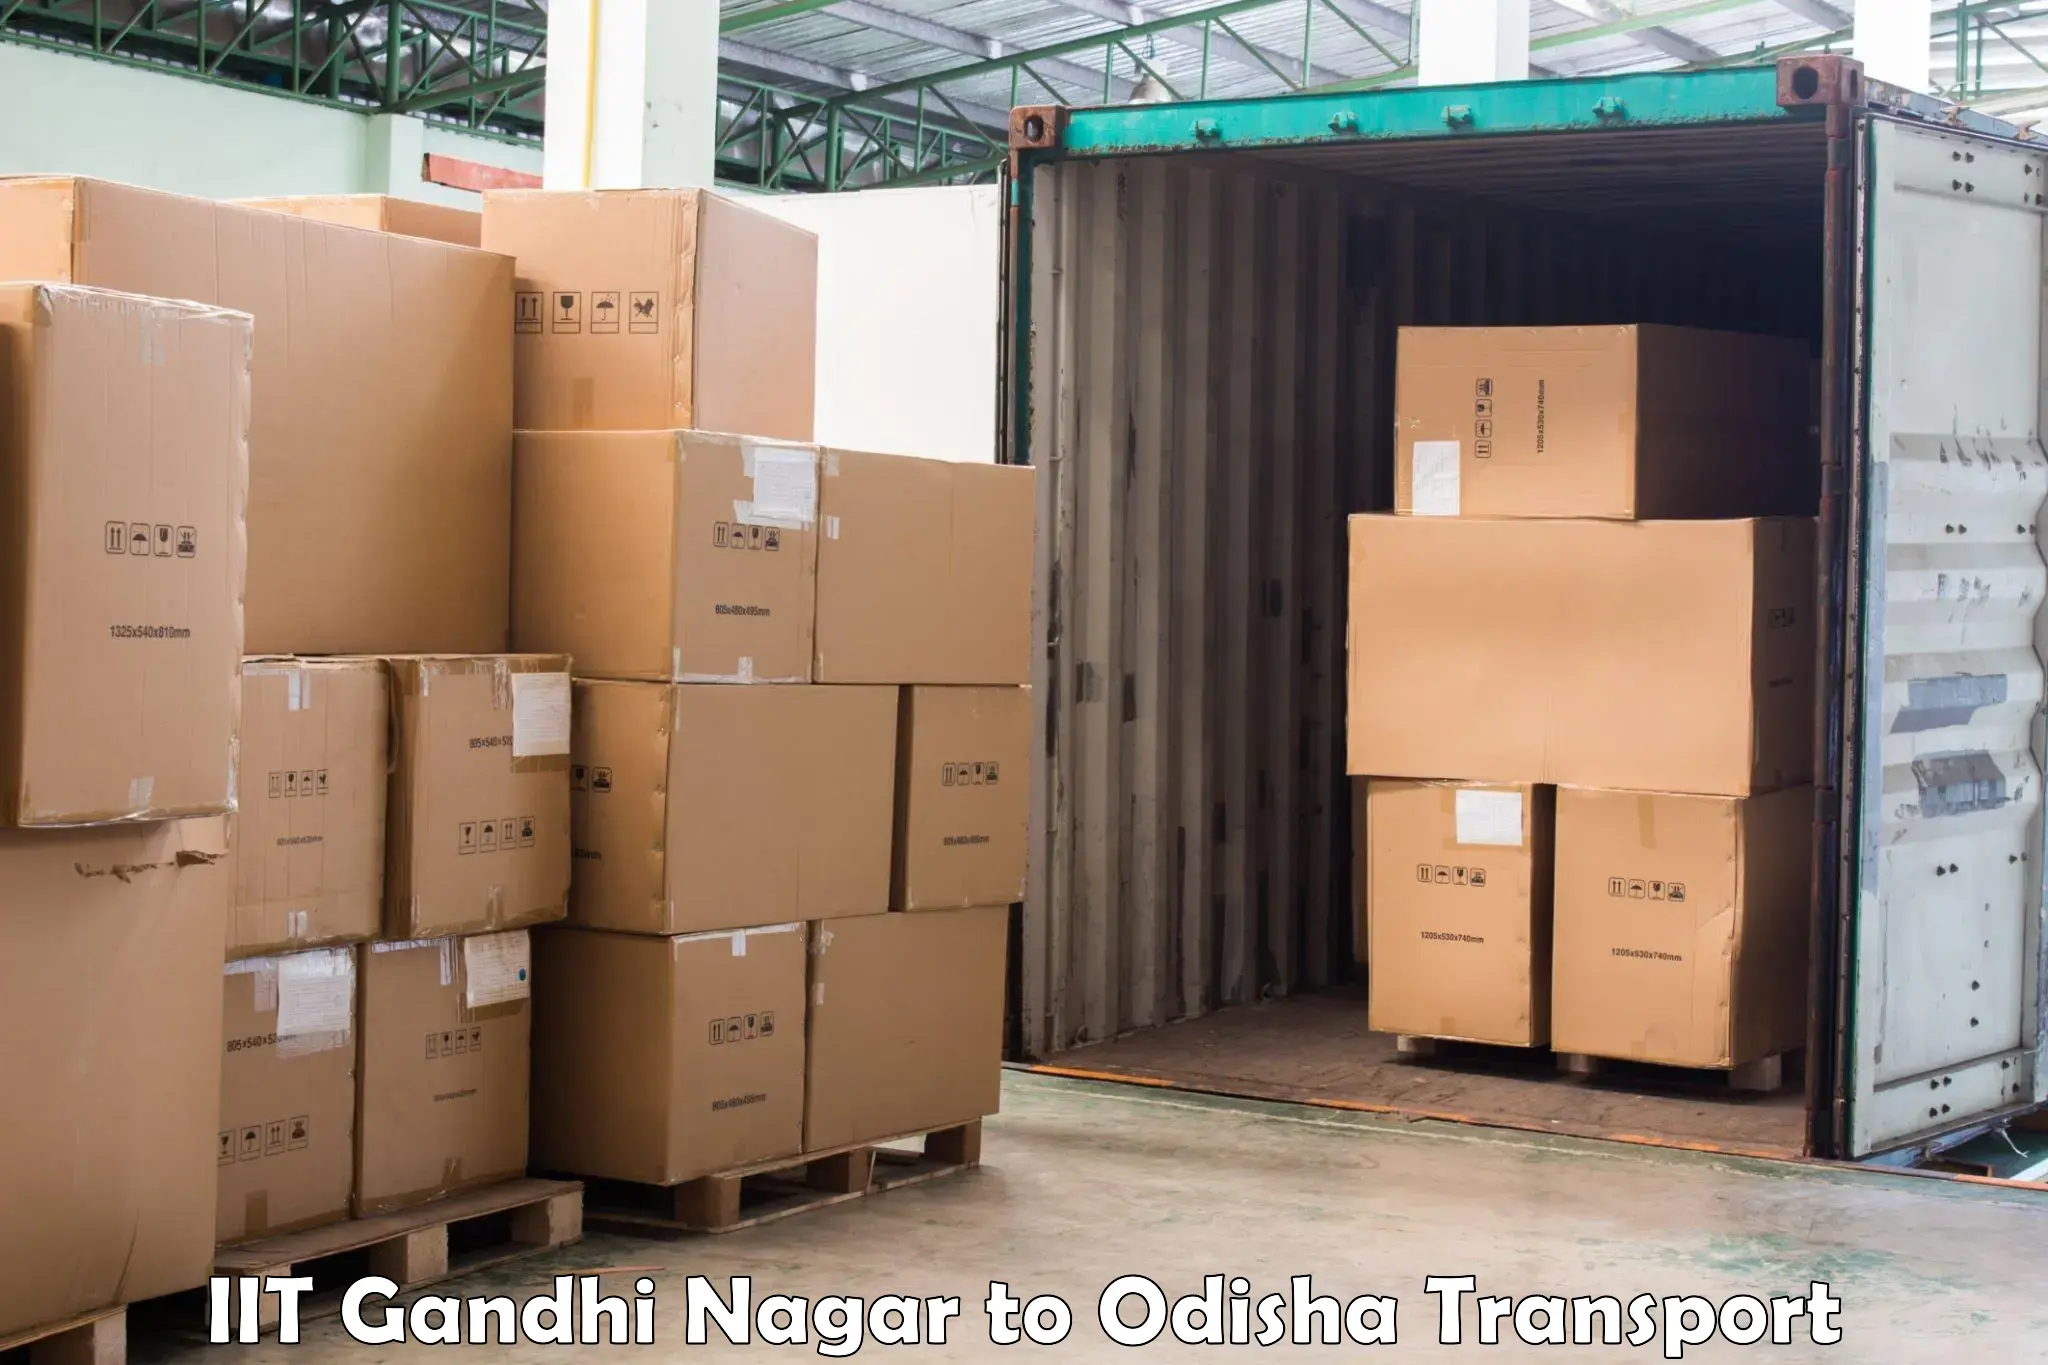 Container transport service IIT Gandhi Nagar to Mahakalapada